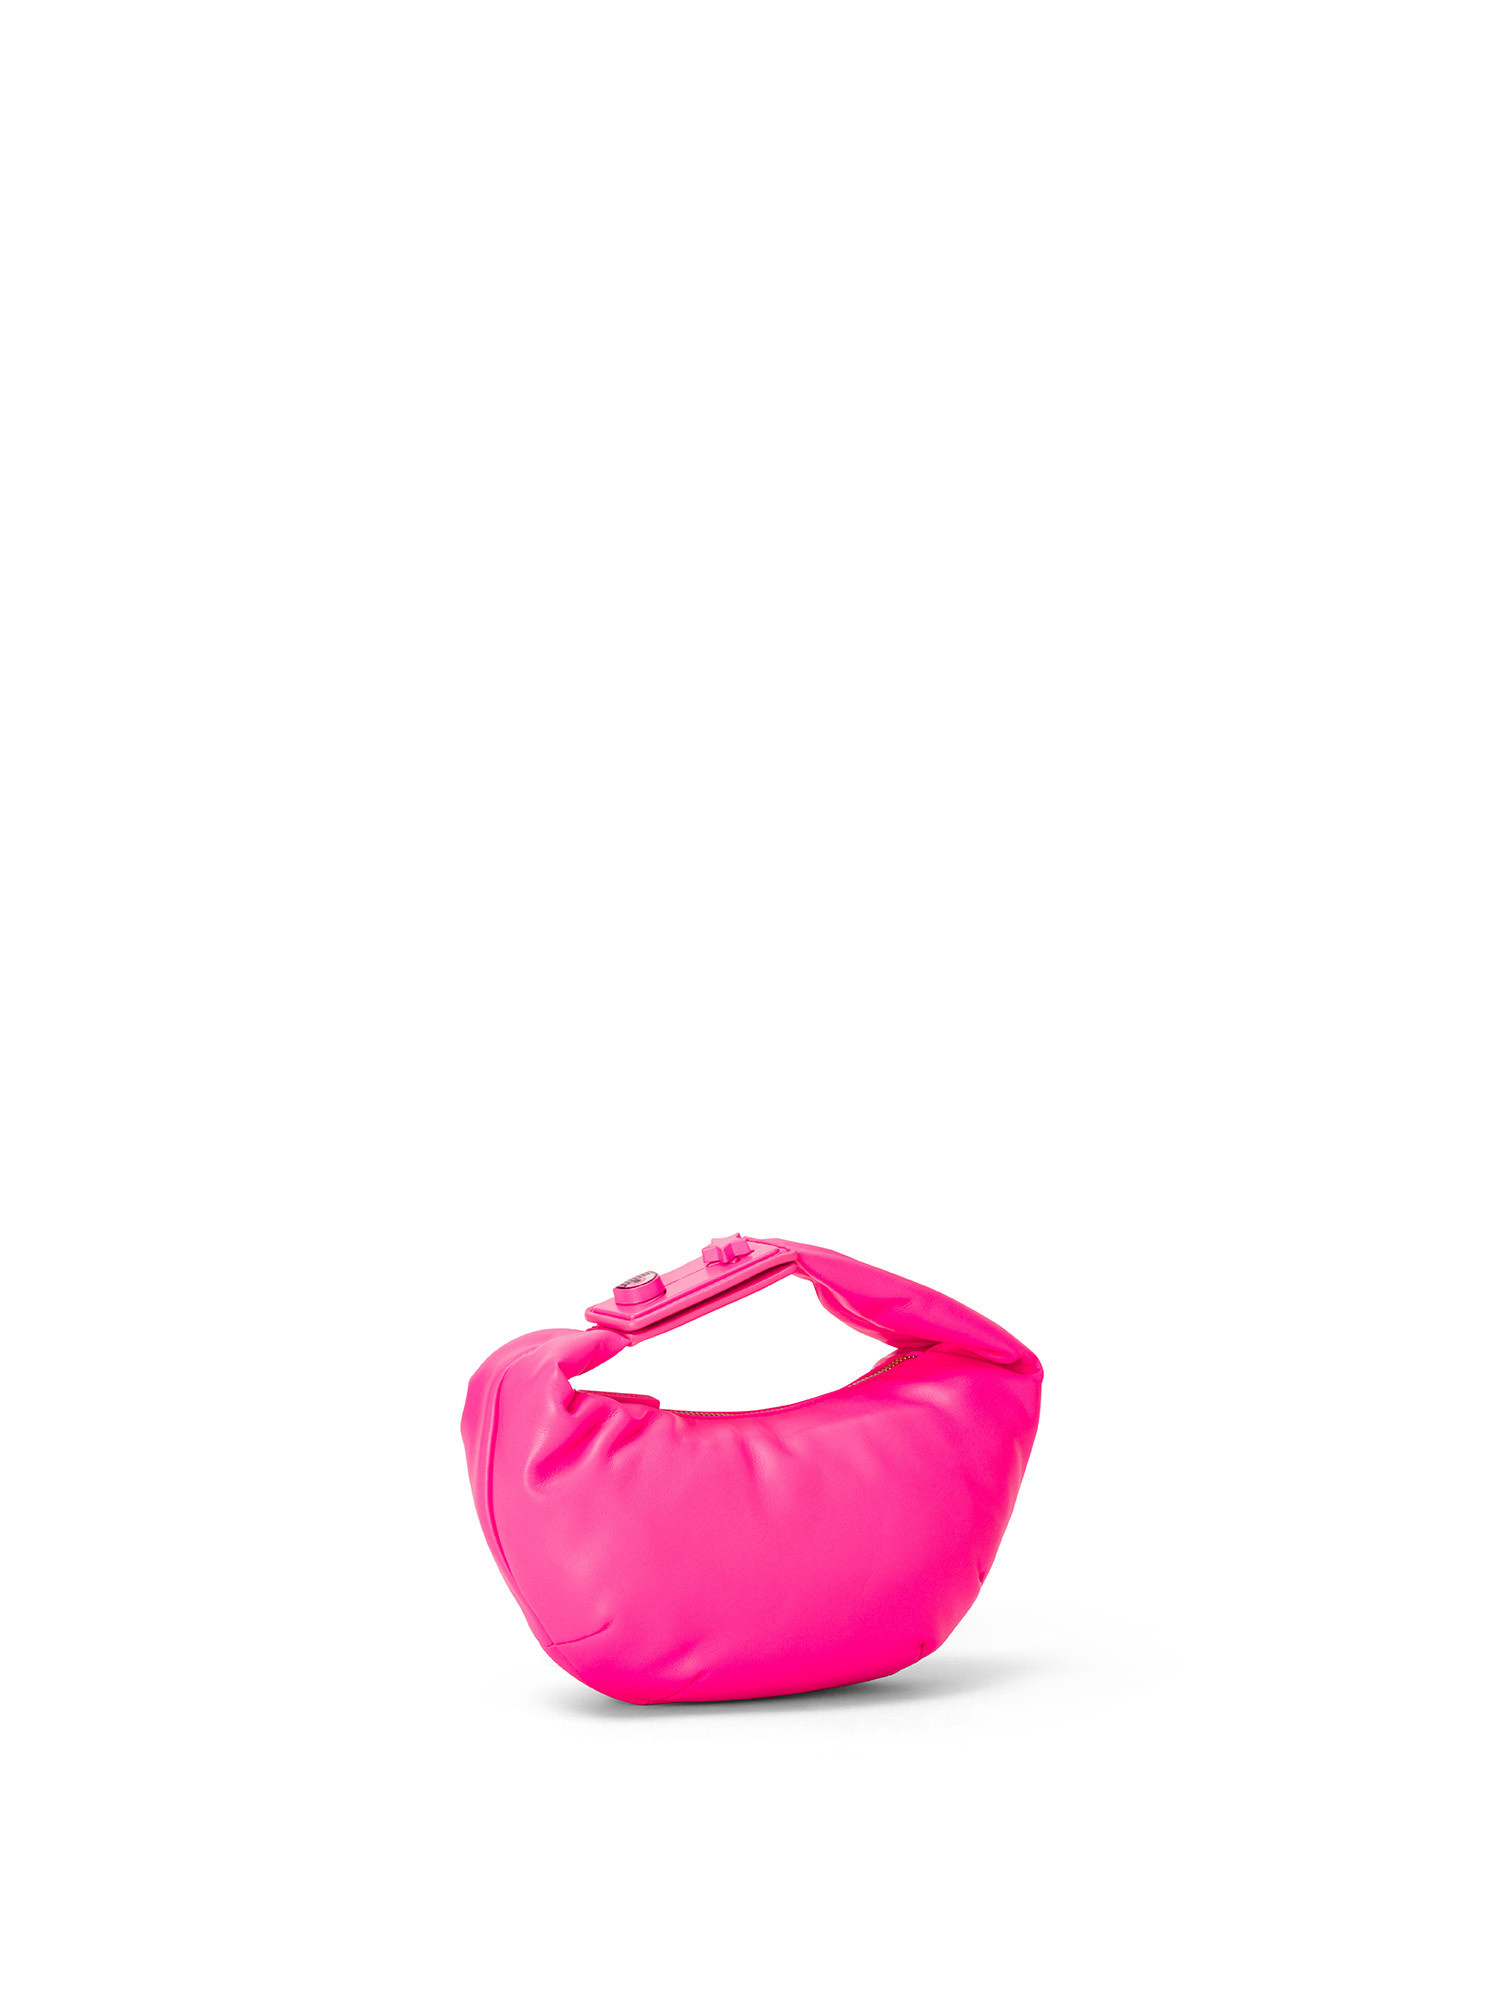 Chiara Ferragni - Range E eye star lock bag, Pink, large image number 1